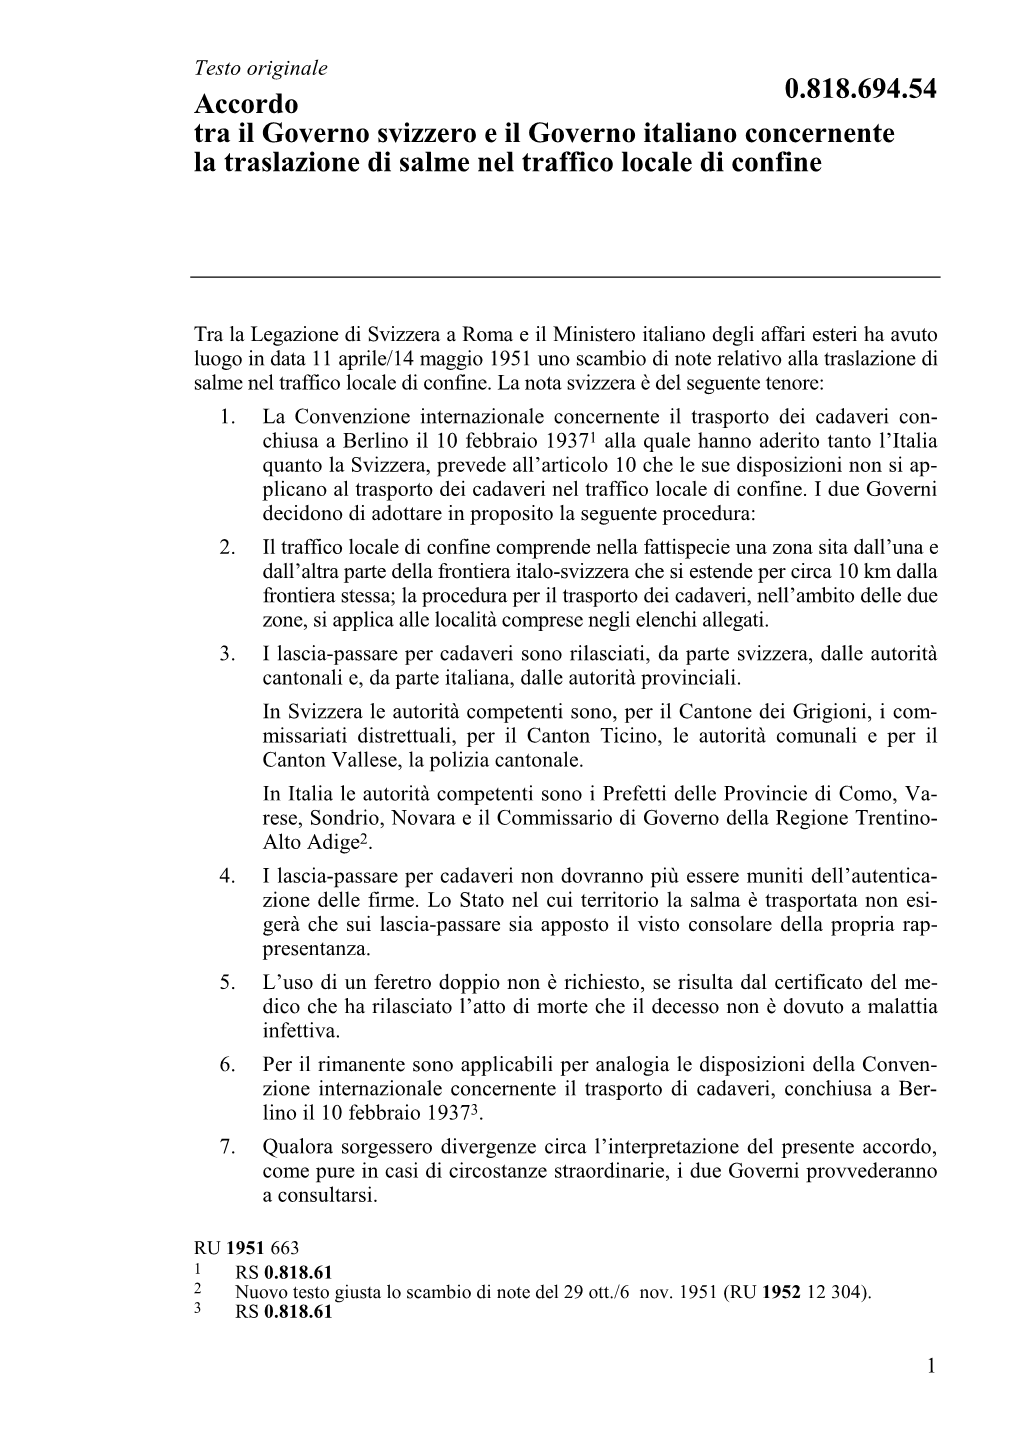 0.818.694.54 Accordo Tra Il Governo Svizzero E Il Governo Italiano Concernente La Traslazione Di Salme Nel Traffico Locale Di Confine